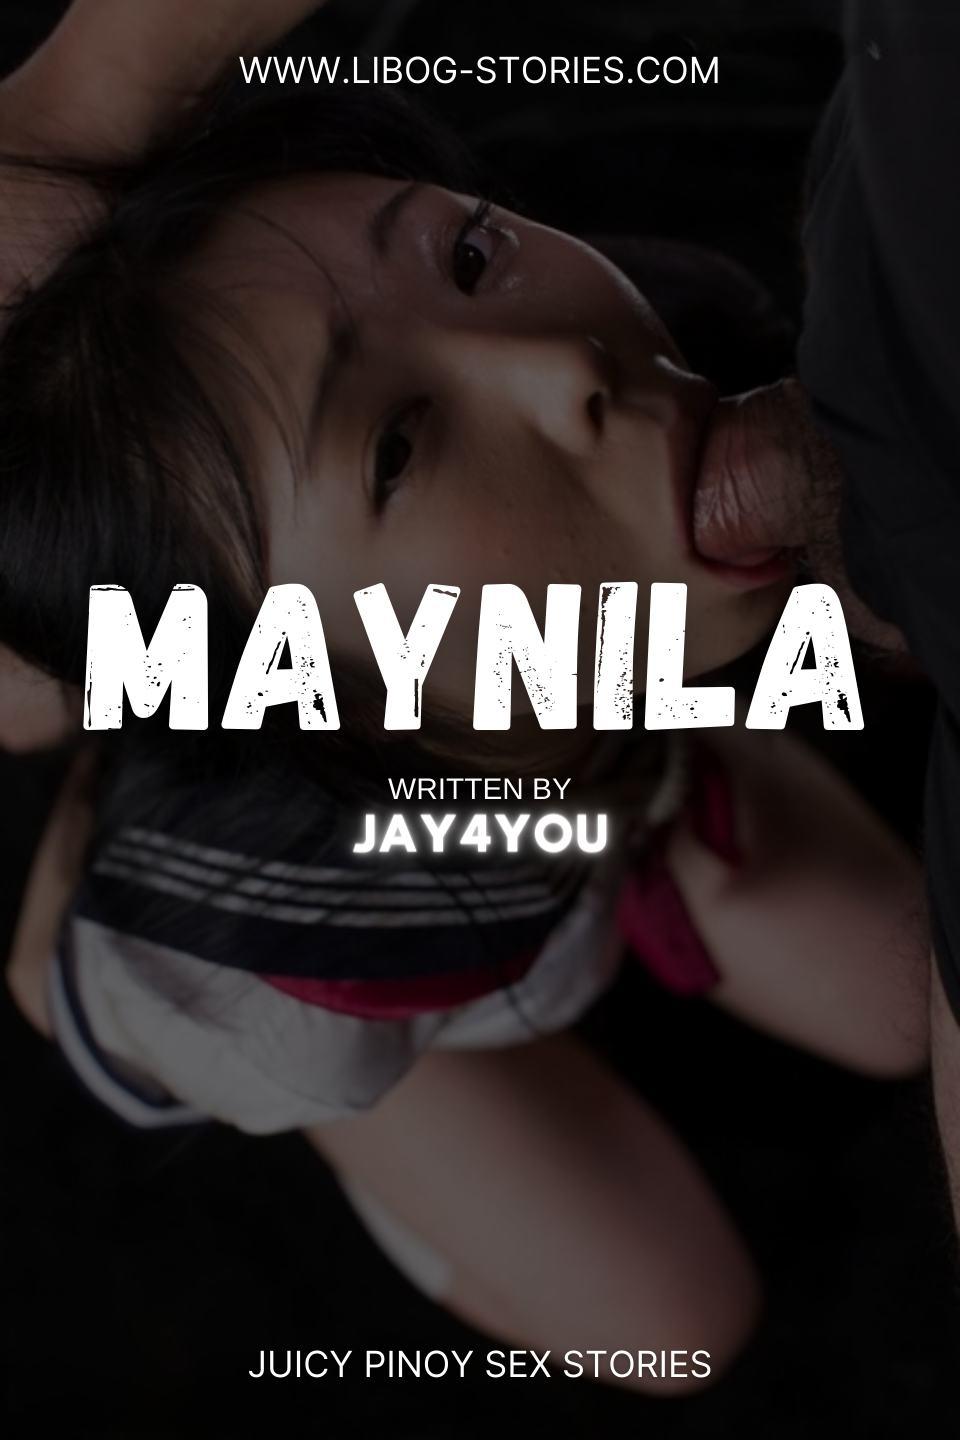 Maynila